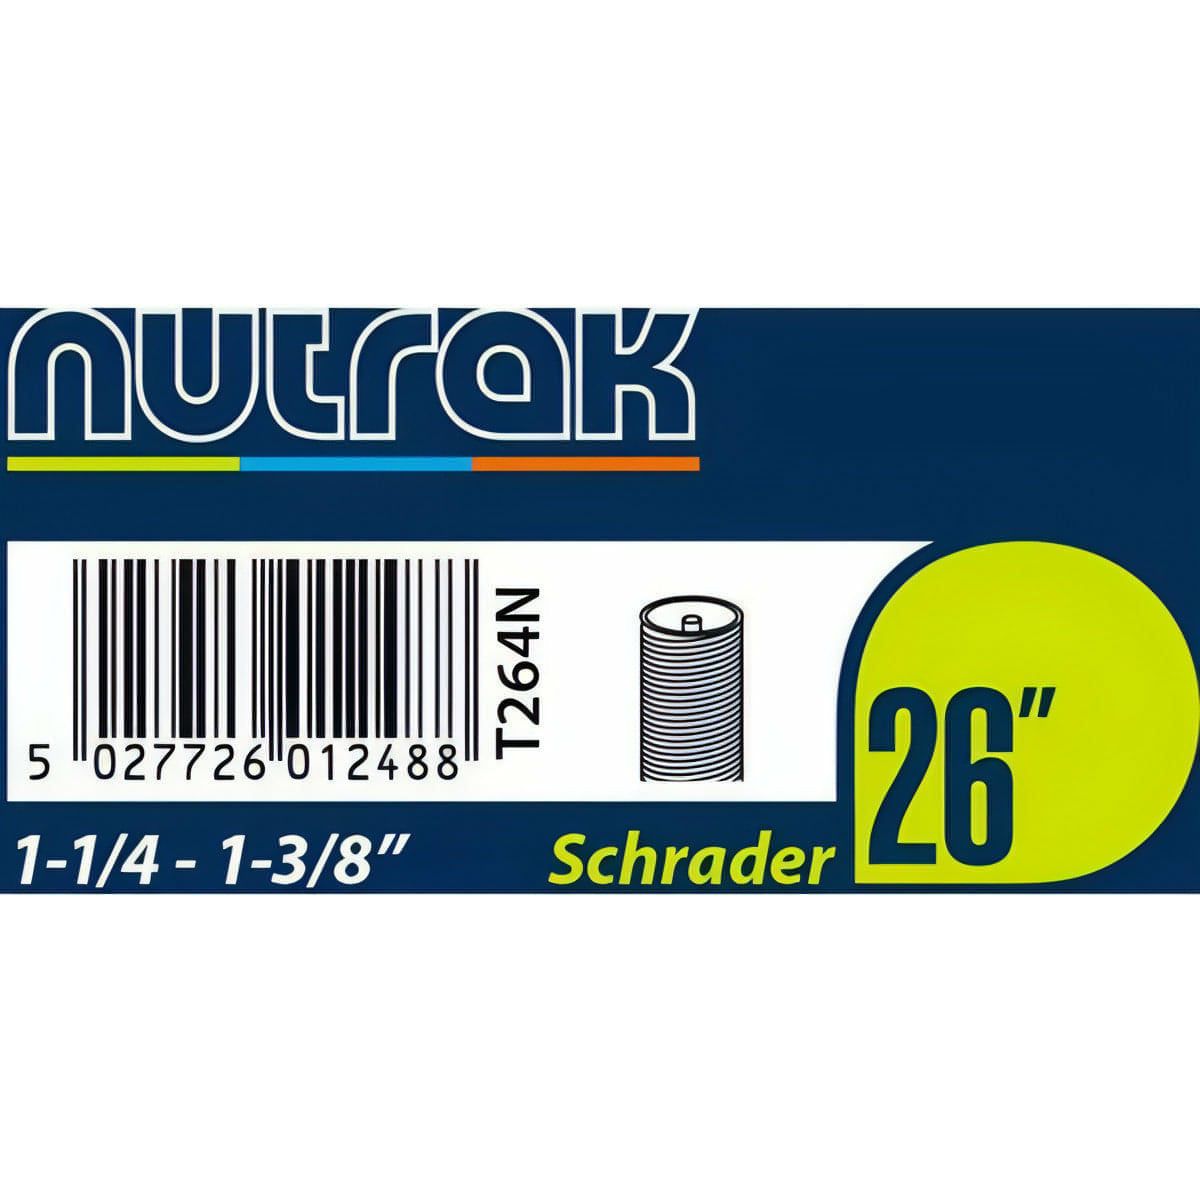 NuTrak Cycle Inner Tube Schrader Valve - 26" x 1-1/4 - 1 3/8 inch 5027726012488 - Start Fitness